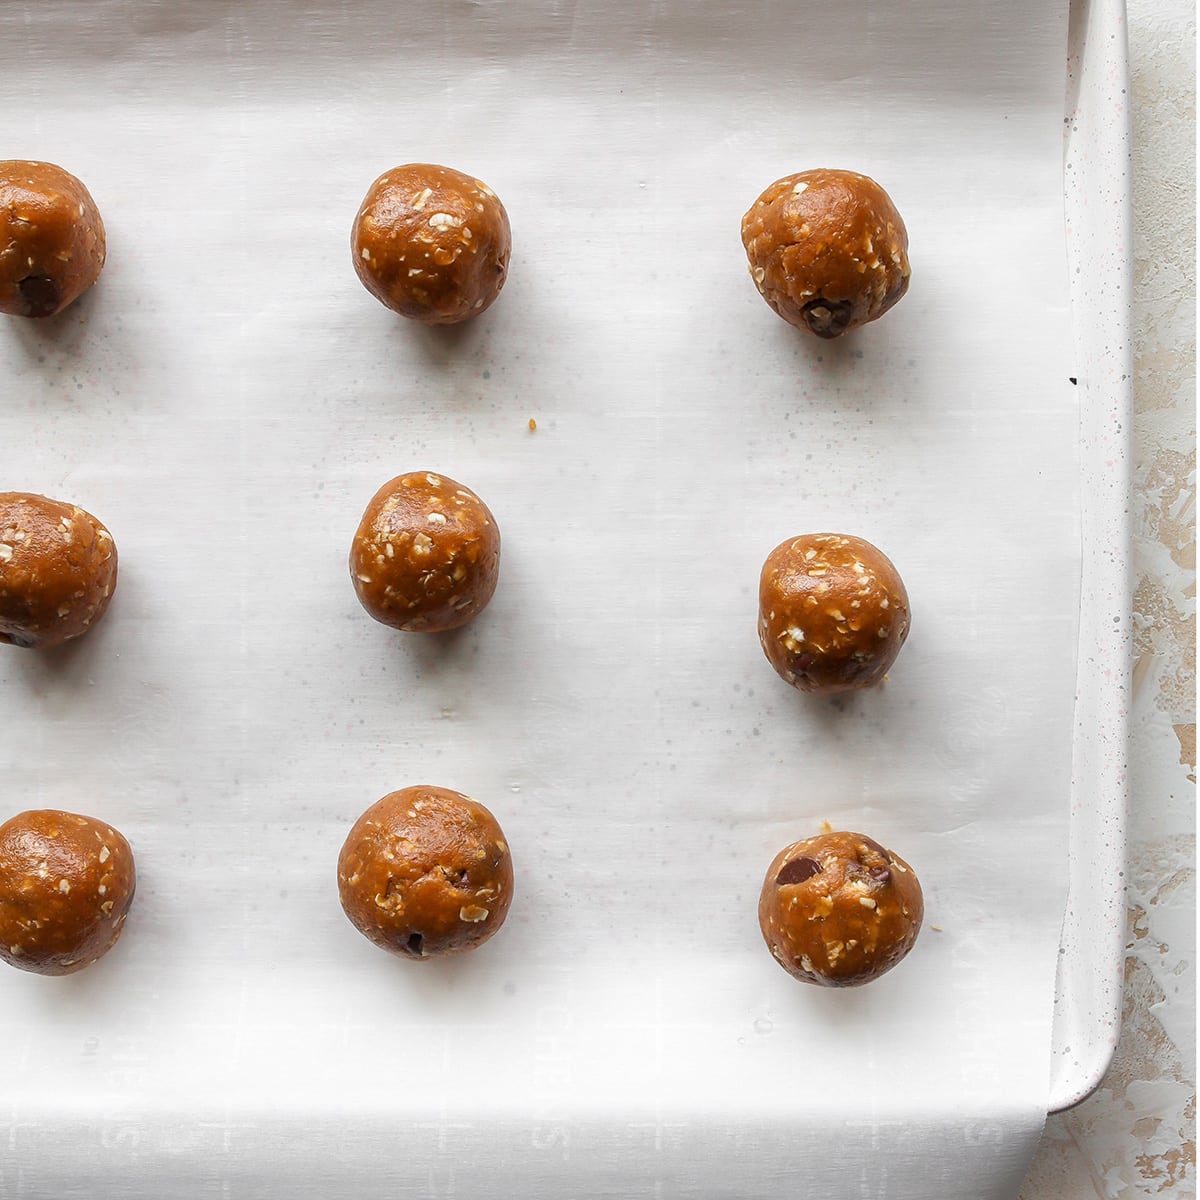 9 Peanut Butter Oatmeal Cookie dough balls on a baking sheet before baking